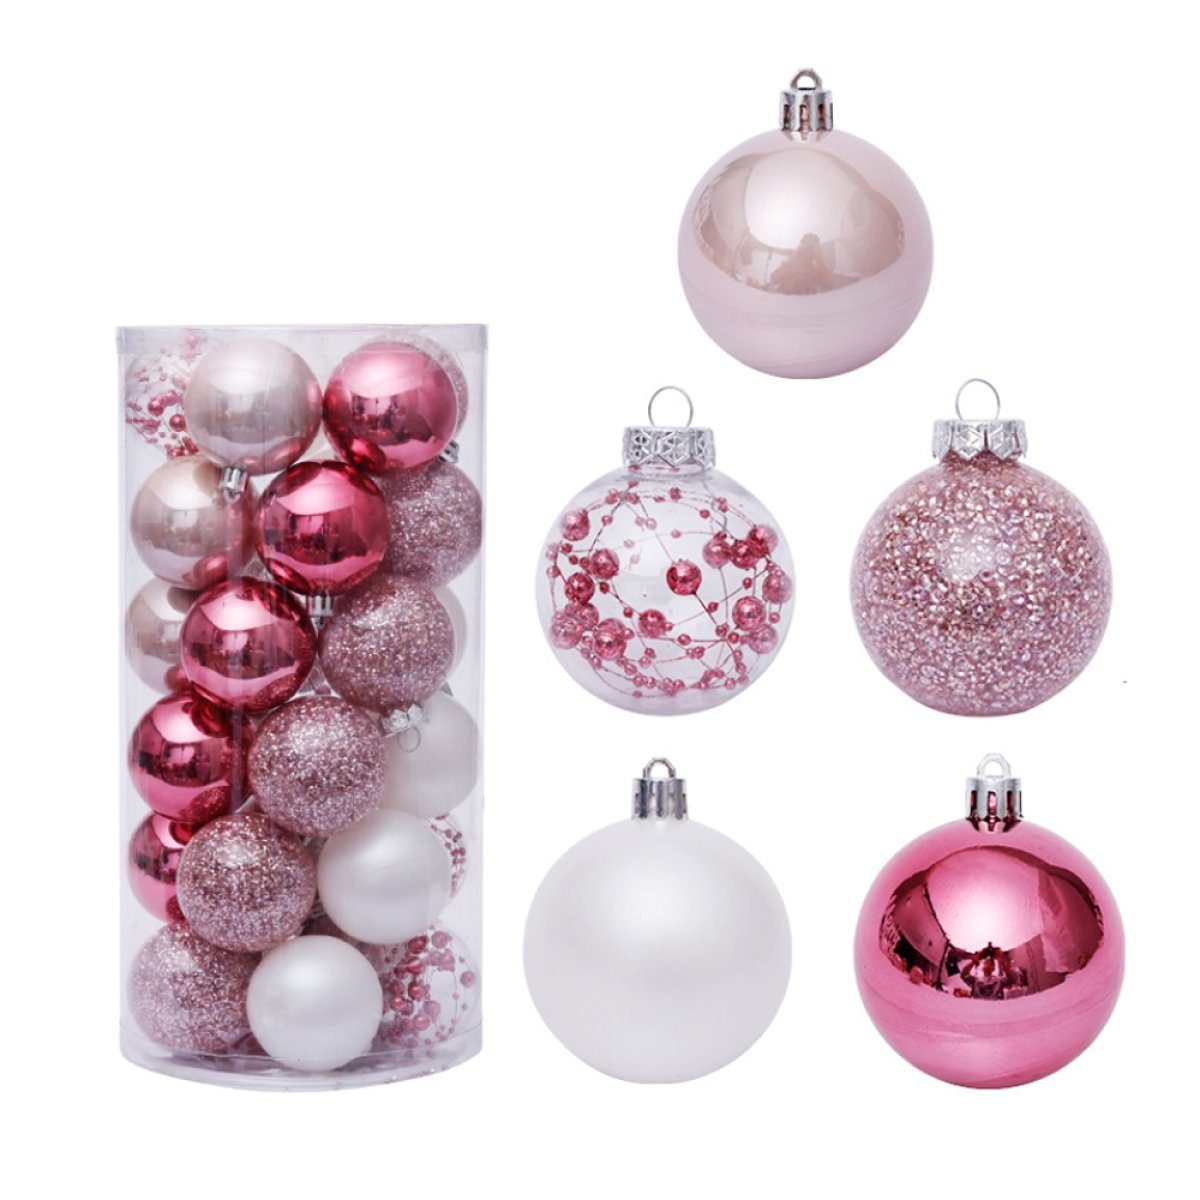 Zeaicos Christbaumschmuck Weihnachtskugel-Ornamente, Weihnachtsbaumkugeln für Party Urlaub